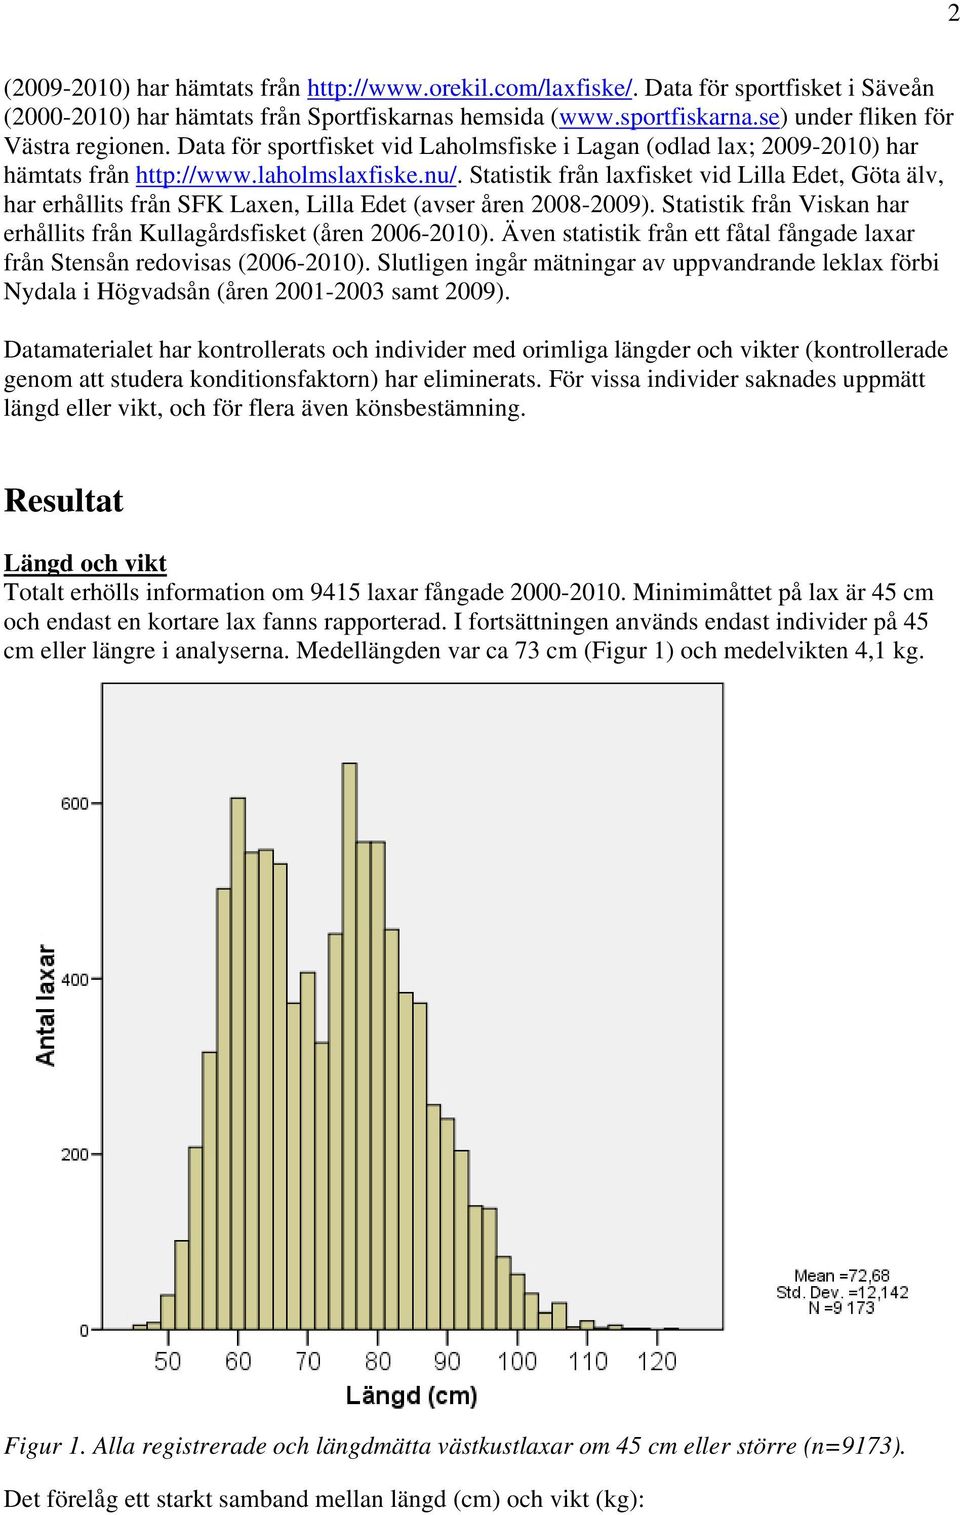 Statistik från laxfisket vid Lilla Edet, Göta älv, har erhållits från SFK Laxen, Lilla Edet (avser åren 2008-2009). Statistik från Viskan har erhållits från Kullagårdsfisket (åren 2006-2010).